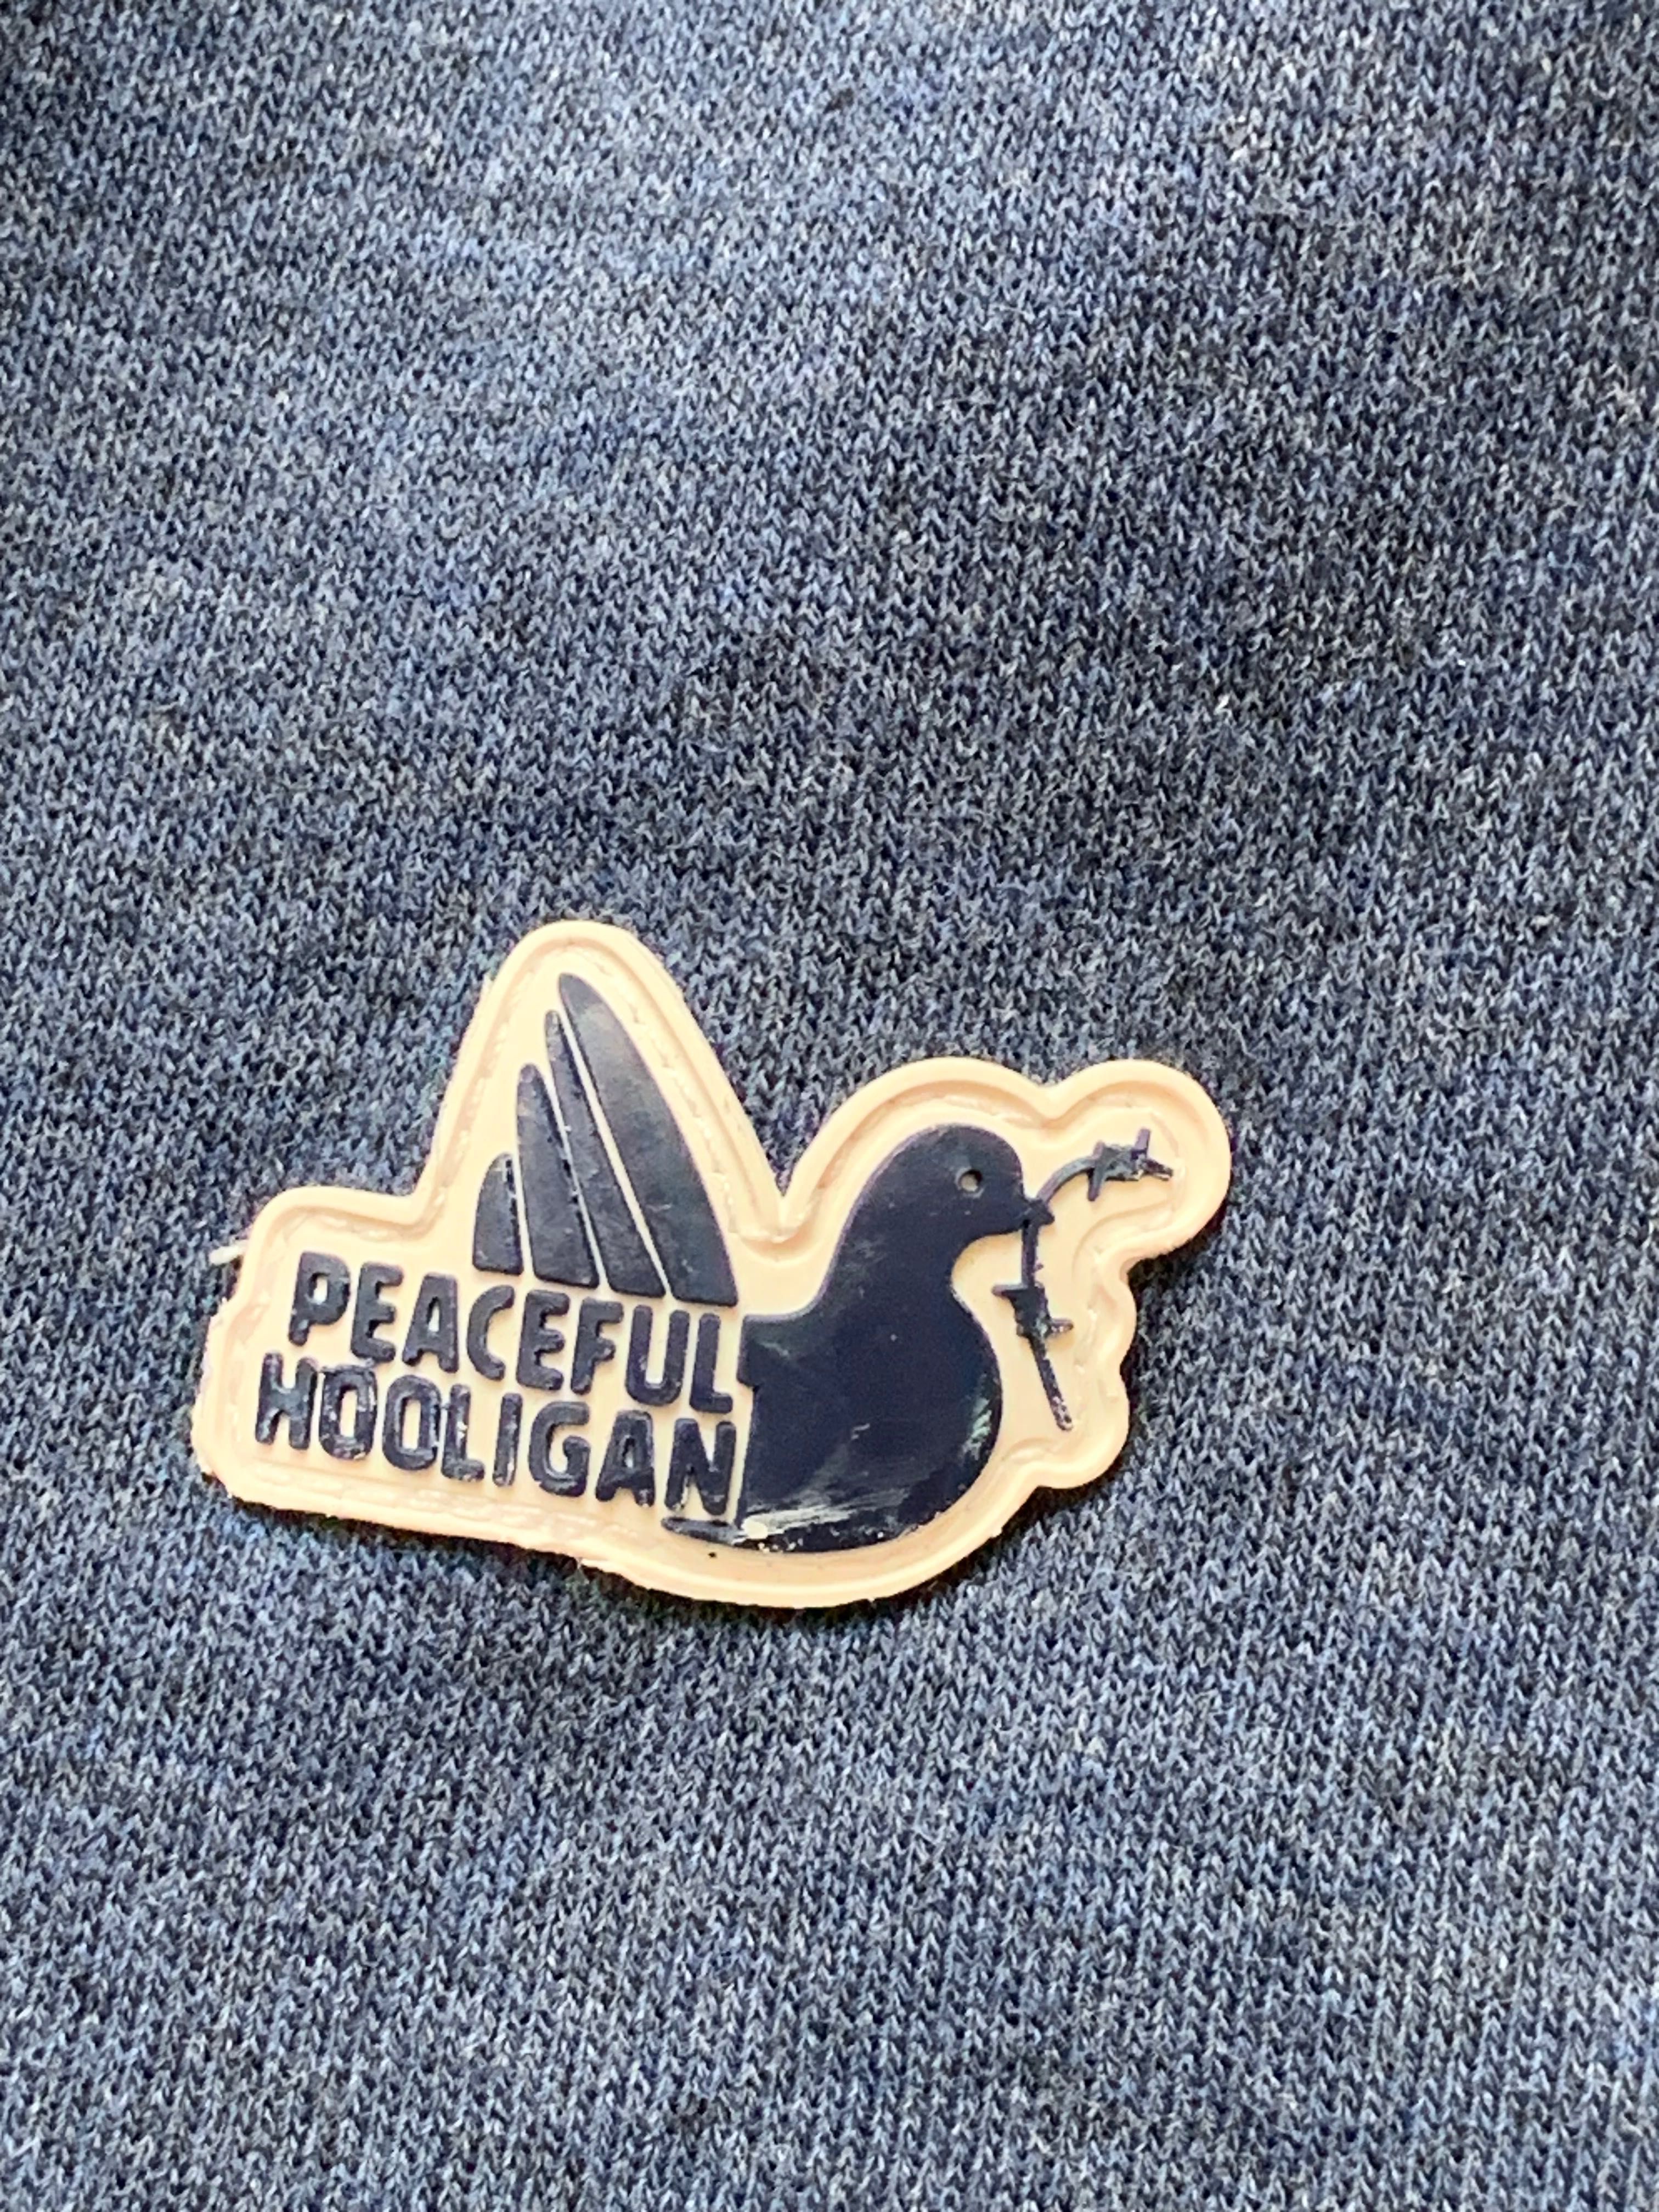 Peaceful hooligan zip hoodie